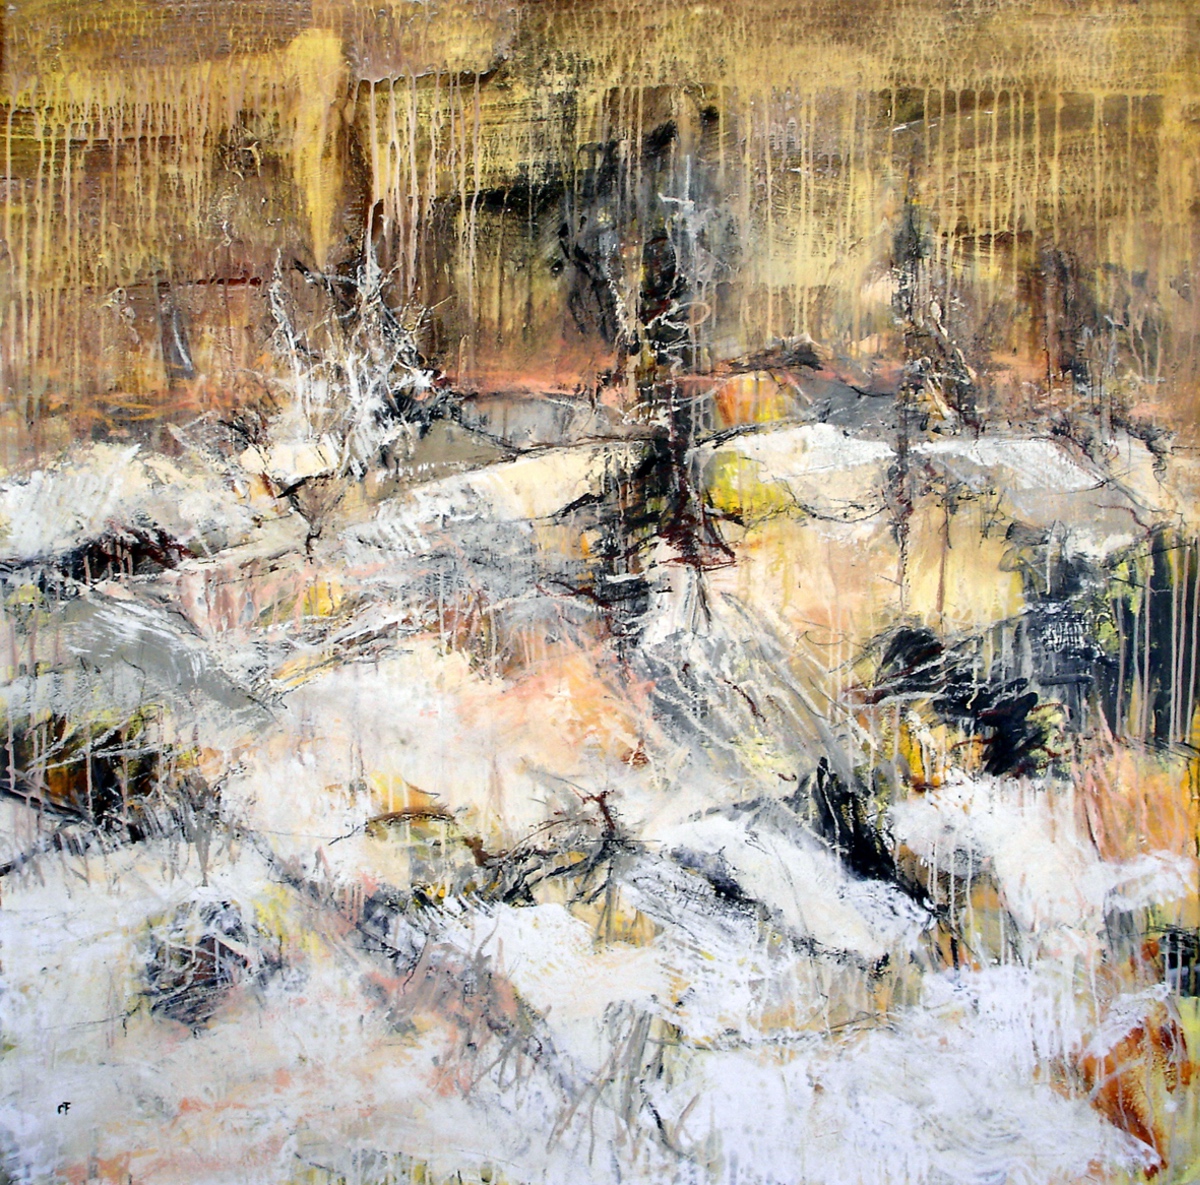 “Snevejr“, 2005, 135 x 135 cm. Akryl, olie og sand på lærred. (Carsten Frank nr. 1082) Sold